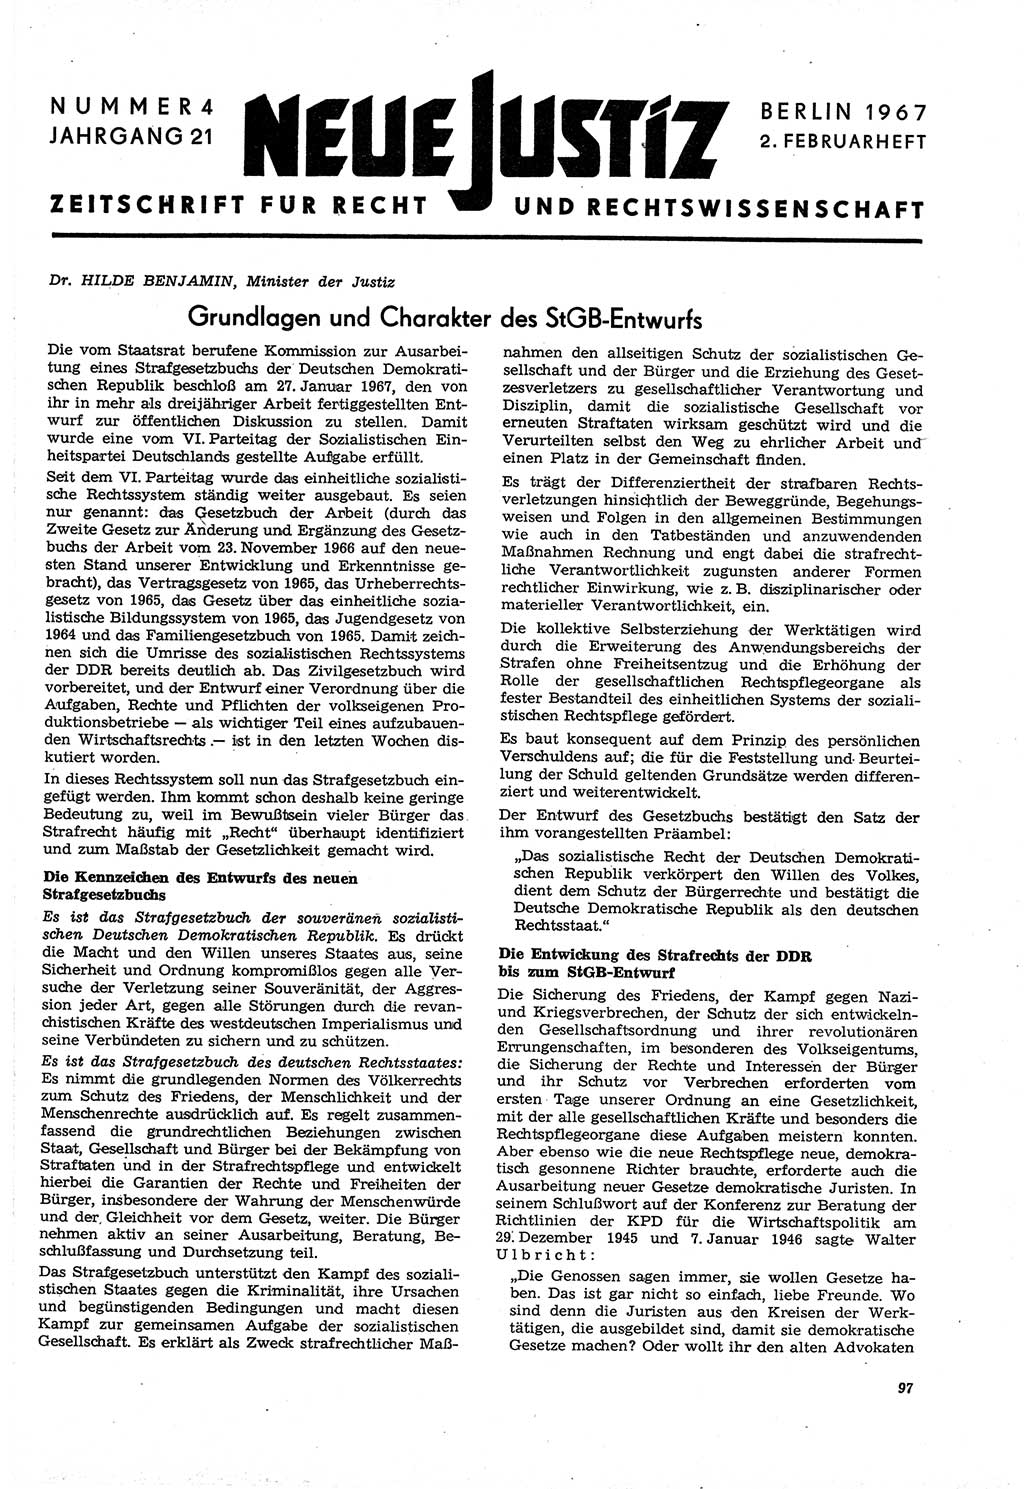 Neue Justiz (NJ), Zeitschrift für Recht und Rechtswissenschaft [Deutsche Demokratische Republik (DDR)], 21. Jahrgang 1967, Seite 97 (NJ DDR 1967, S. 97)